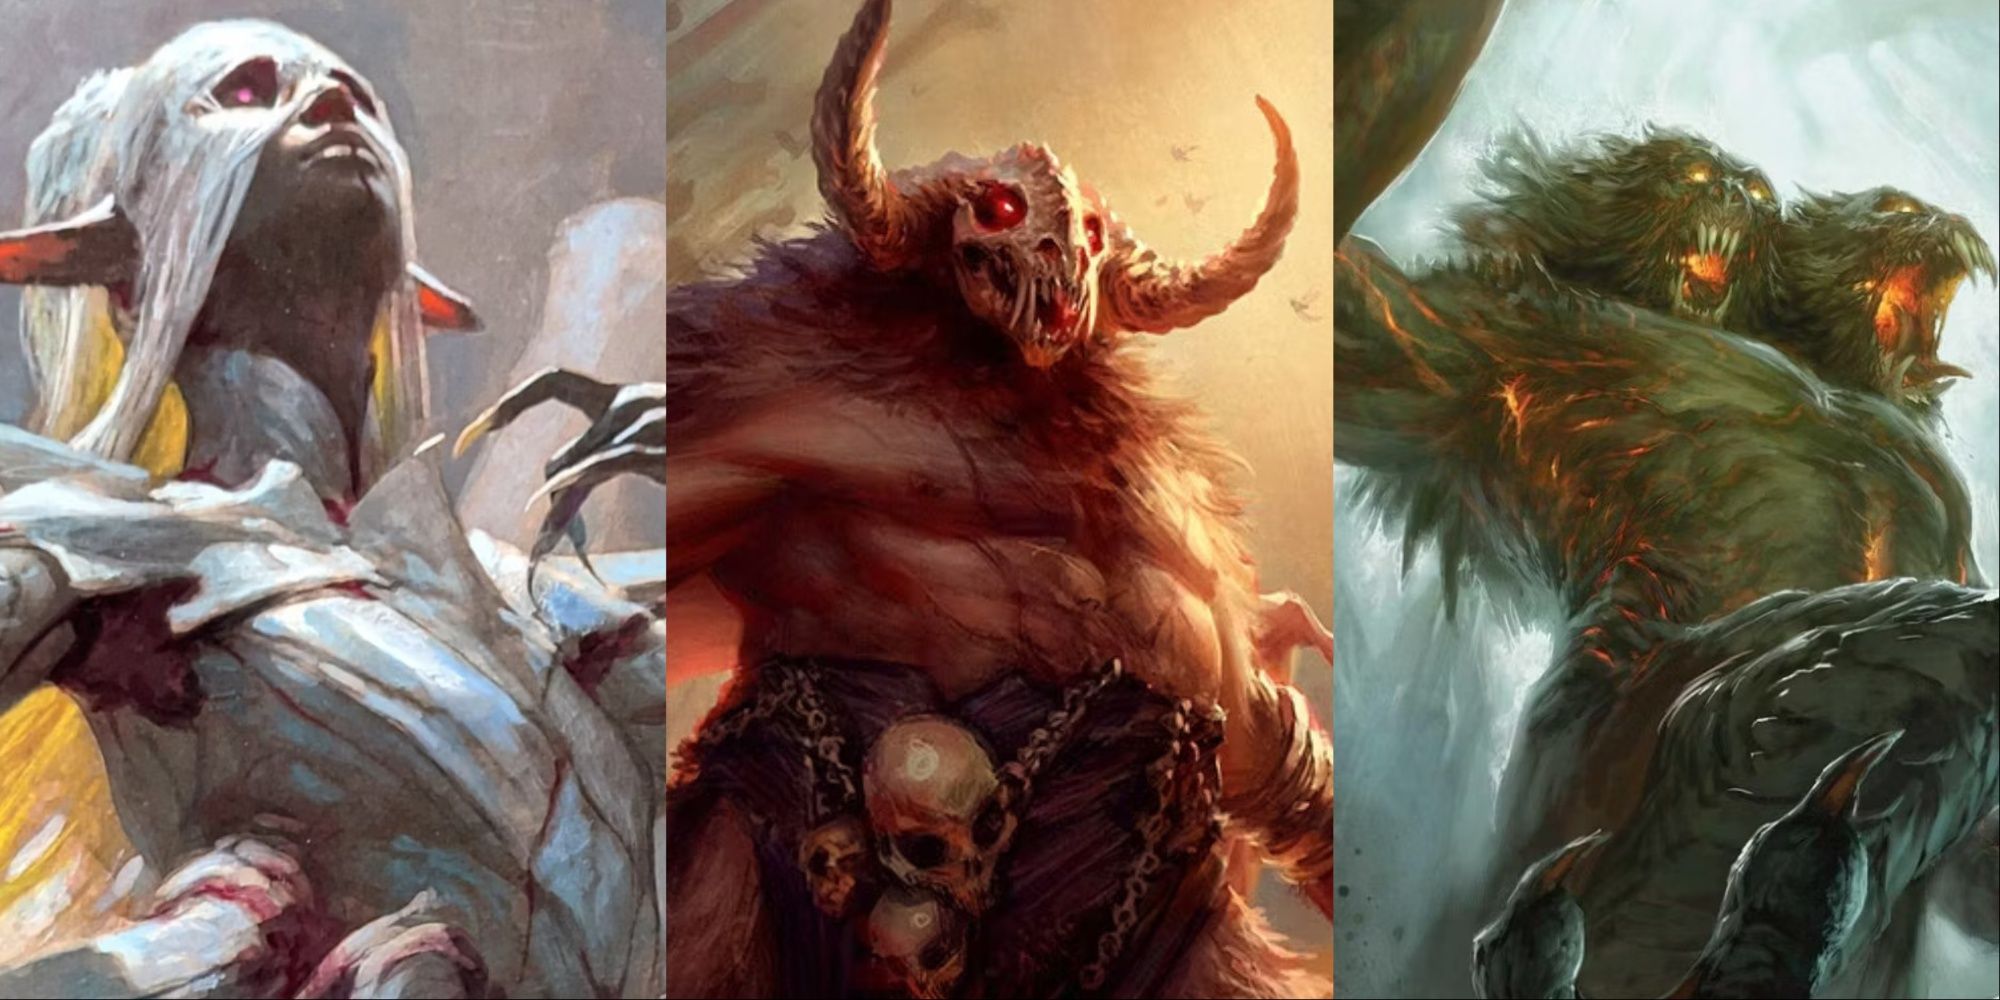 Collagenbild von Lolth, Orcus und Demogorgon, drei Dämonenlords aus Dungeons & Dragons